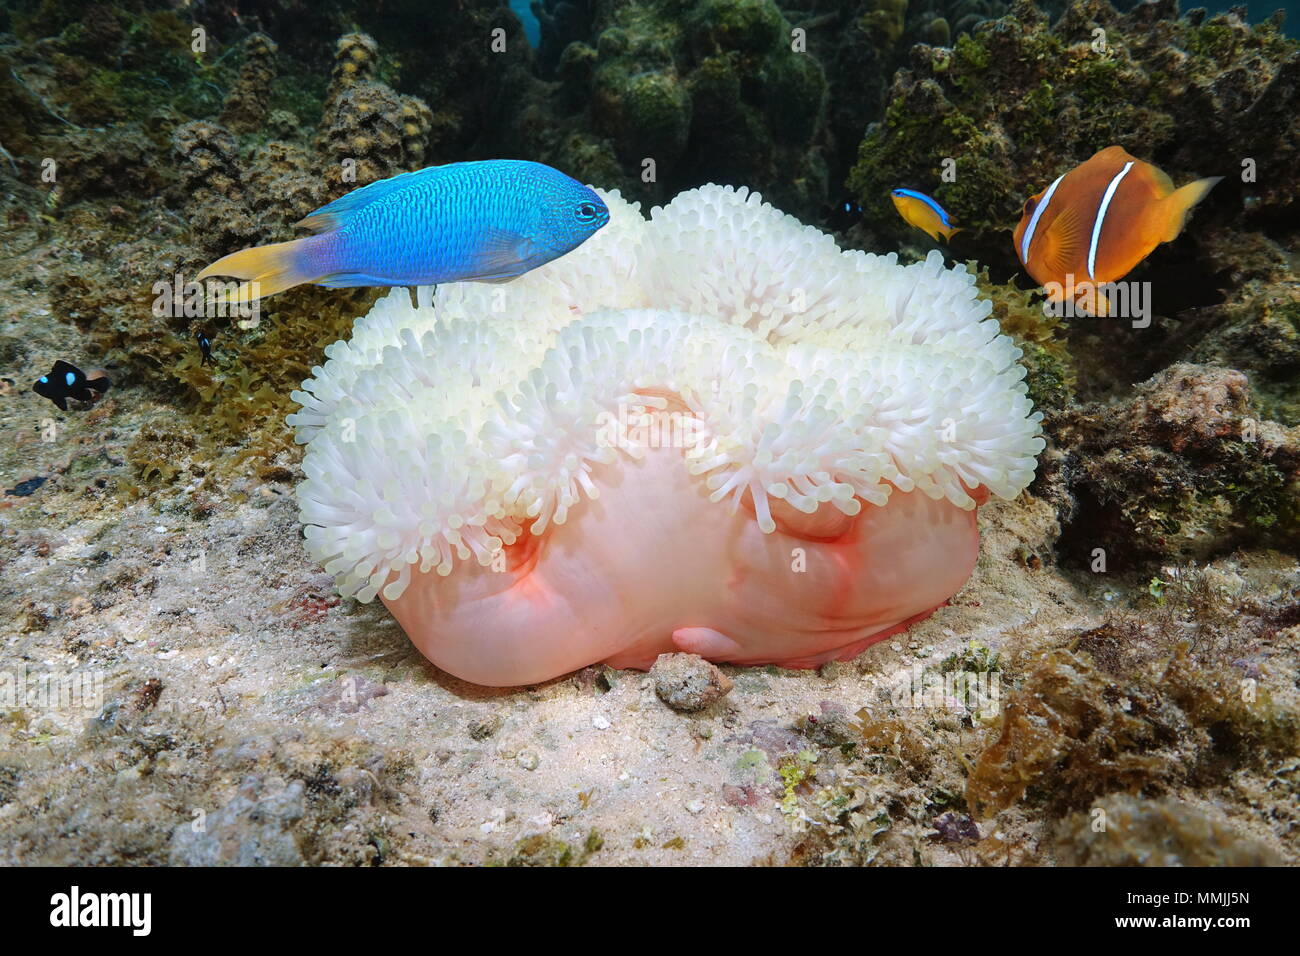 Marine Life, einem herrlichen Seeanemone, Heteractis magnifica, mit bunten tropischen Fischen, Bora Bora, Pazifischer Ozean, Französisch Polynesien Stockfoto